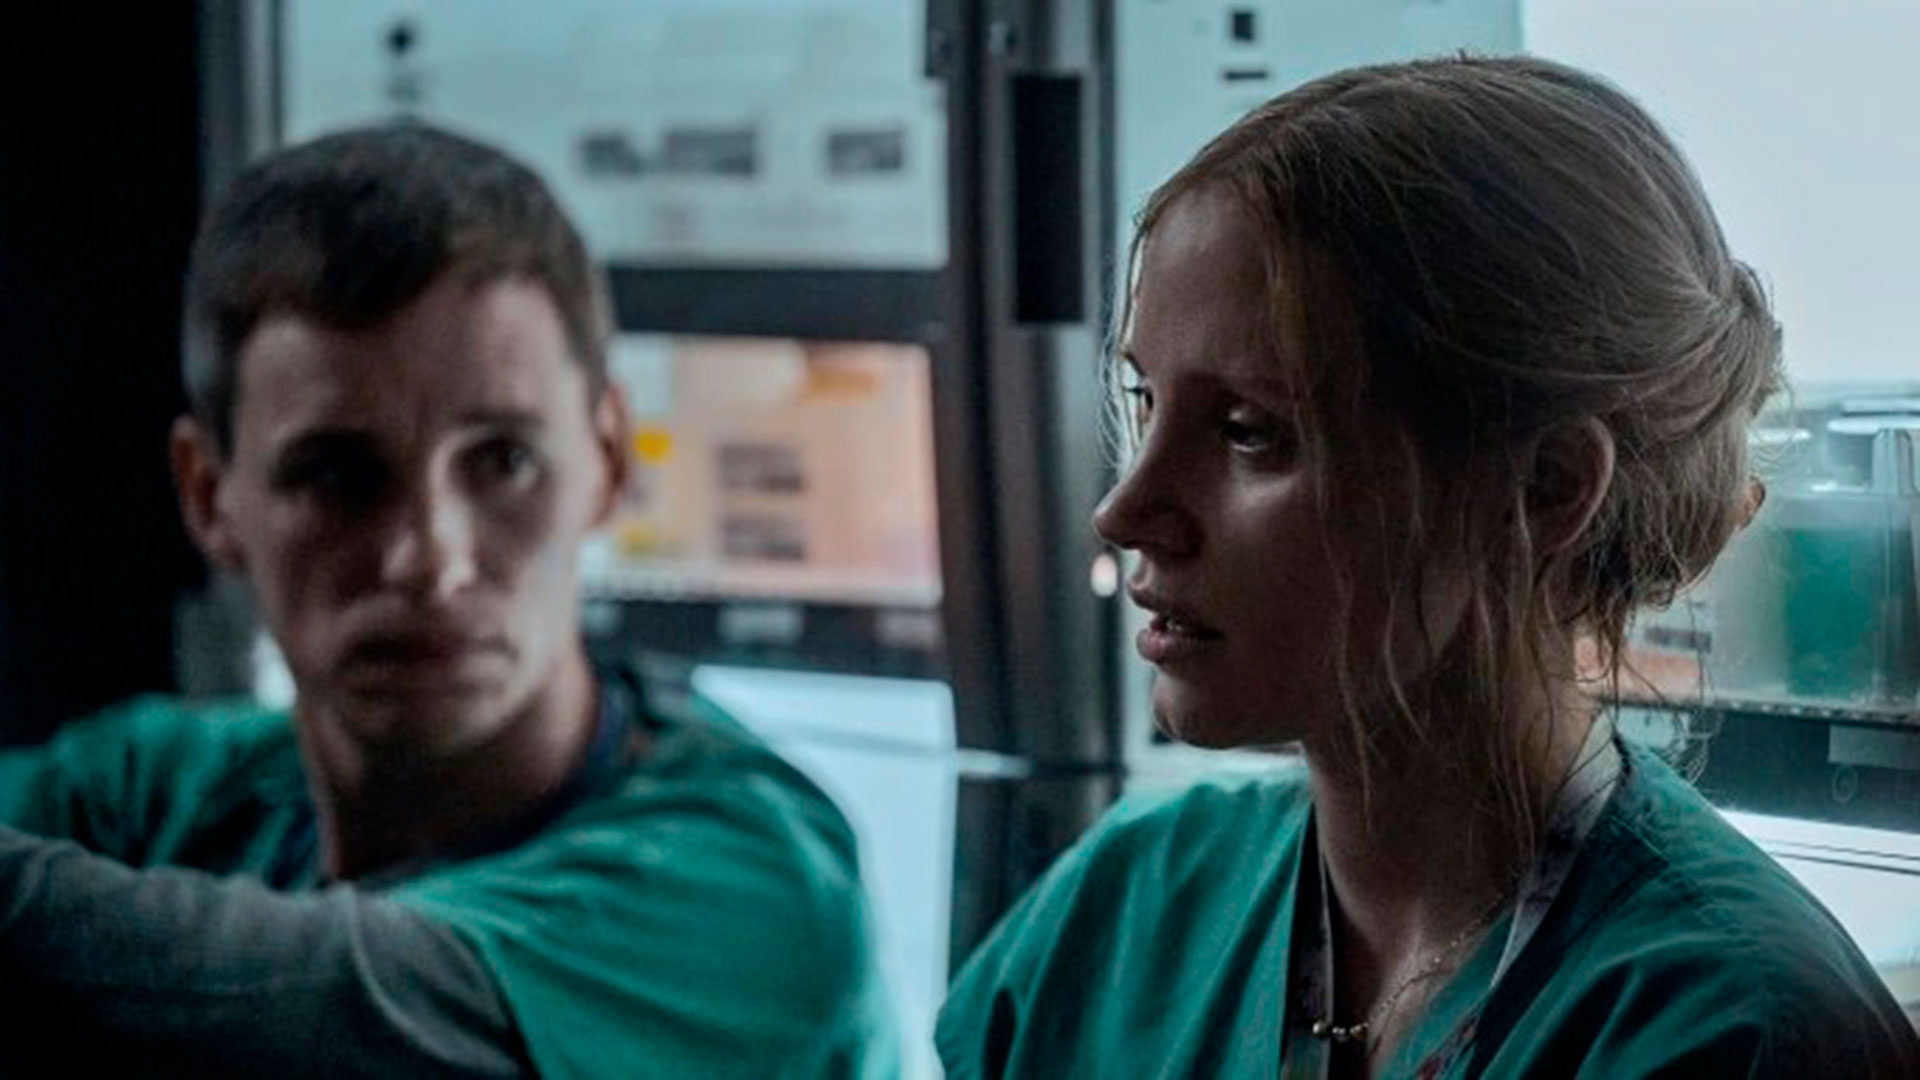 Eddie Redmayne interpreta a Charles Cullen y Jessica Chastain a Amy Loughren en la película "The Good Nurse" ("El Ángel de la muerte" en español), que se verá en Netflix a partir del miércoles 26 de octubre